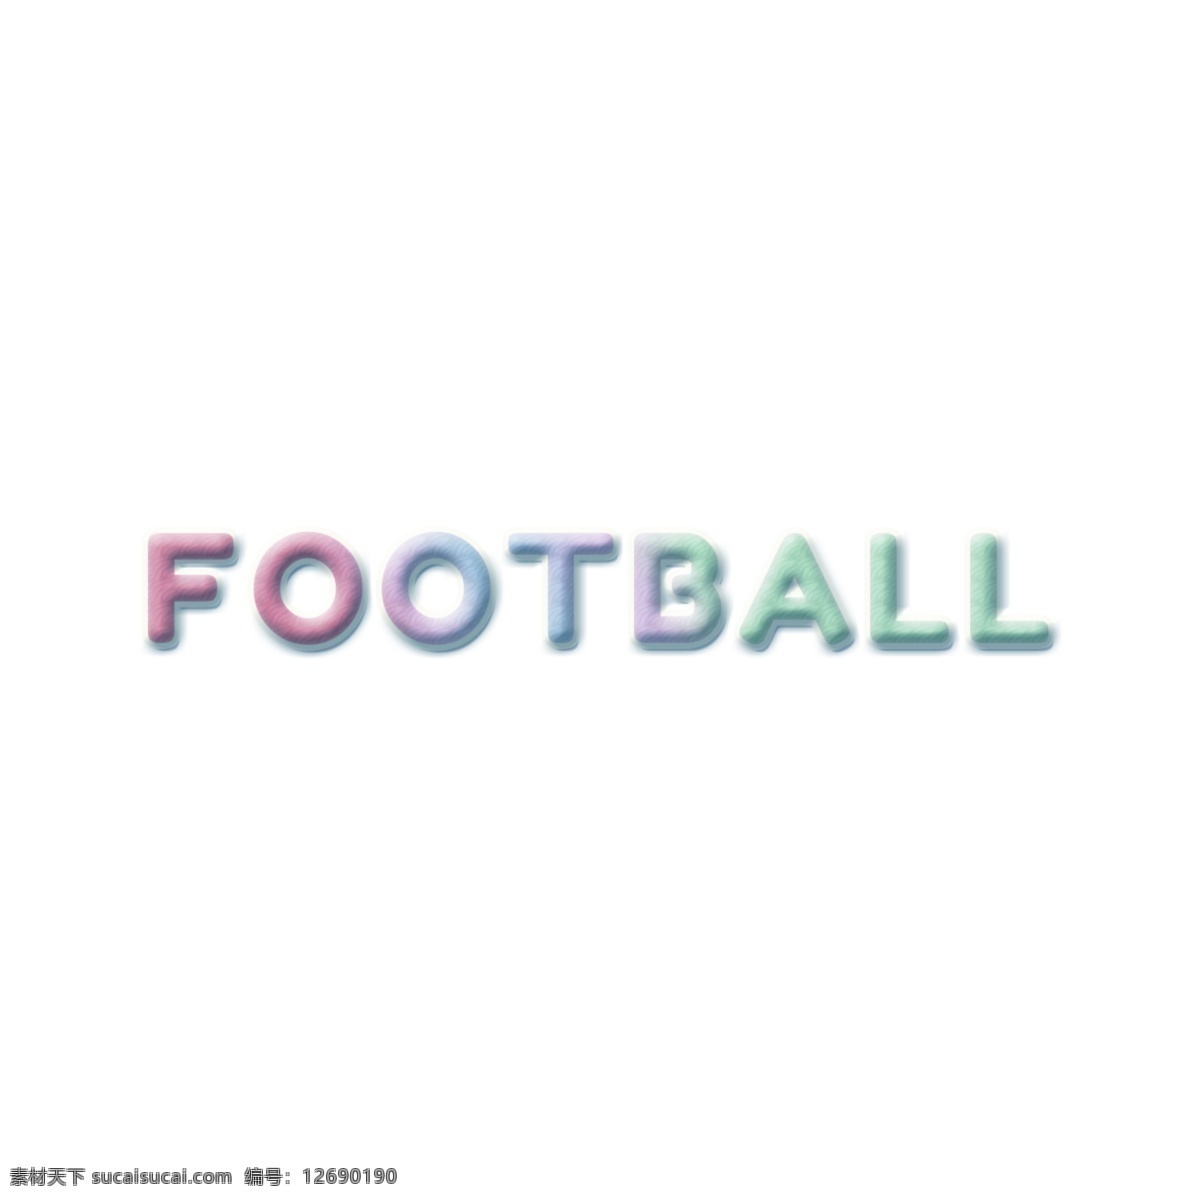 梦幻 彩色 足球 字体 梦想 梦幻色彩 可爱 字体设计 creativ 3d字体